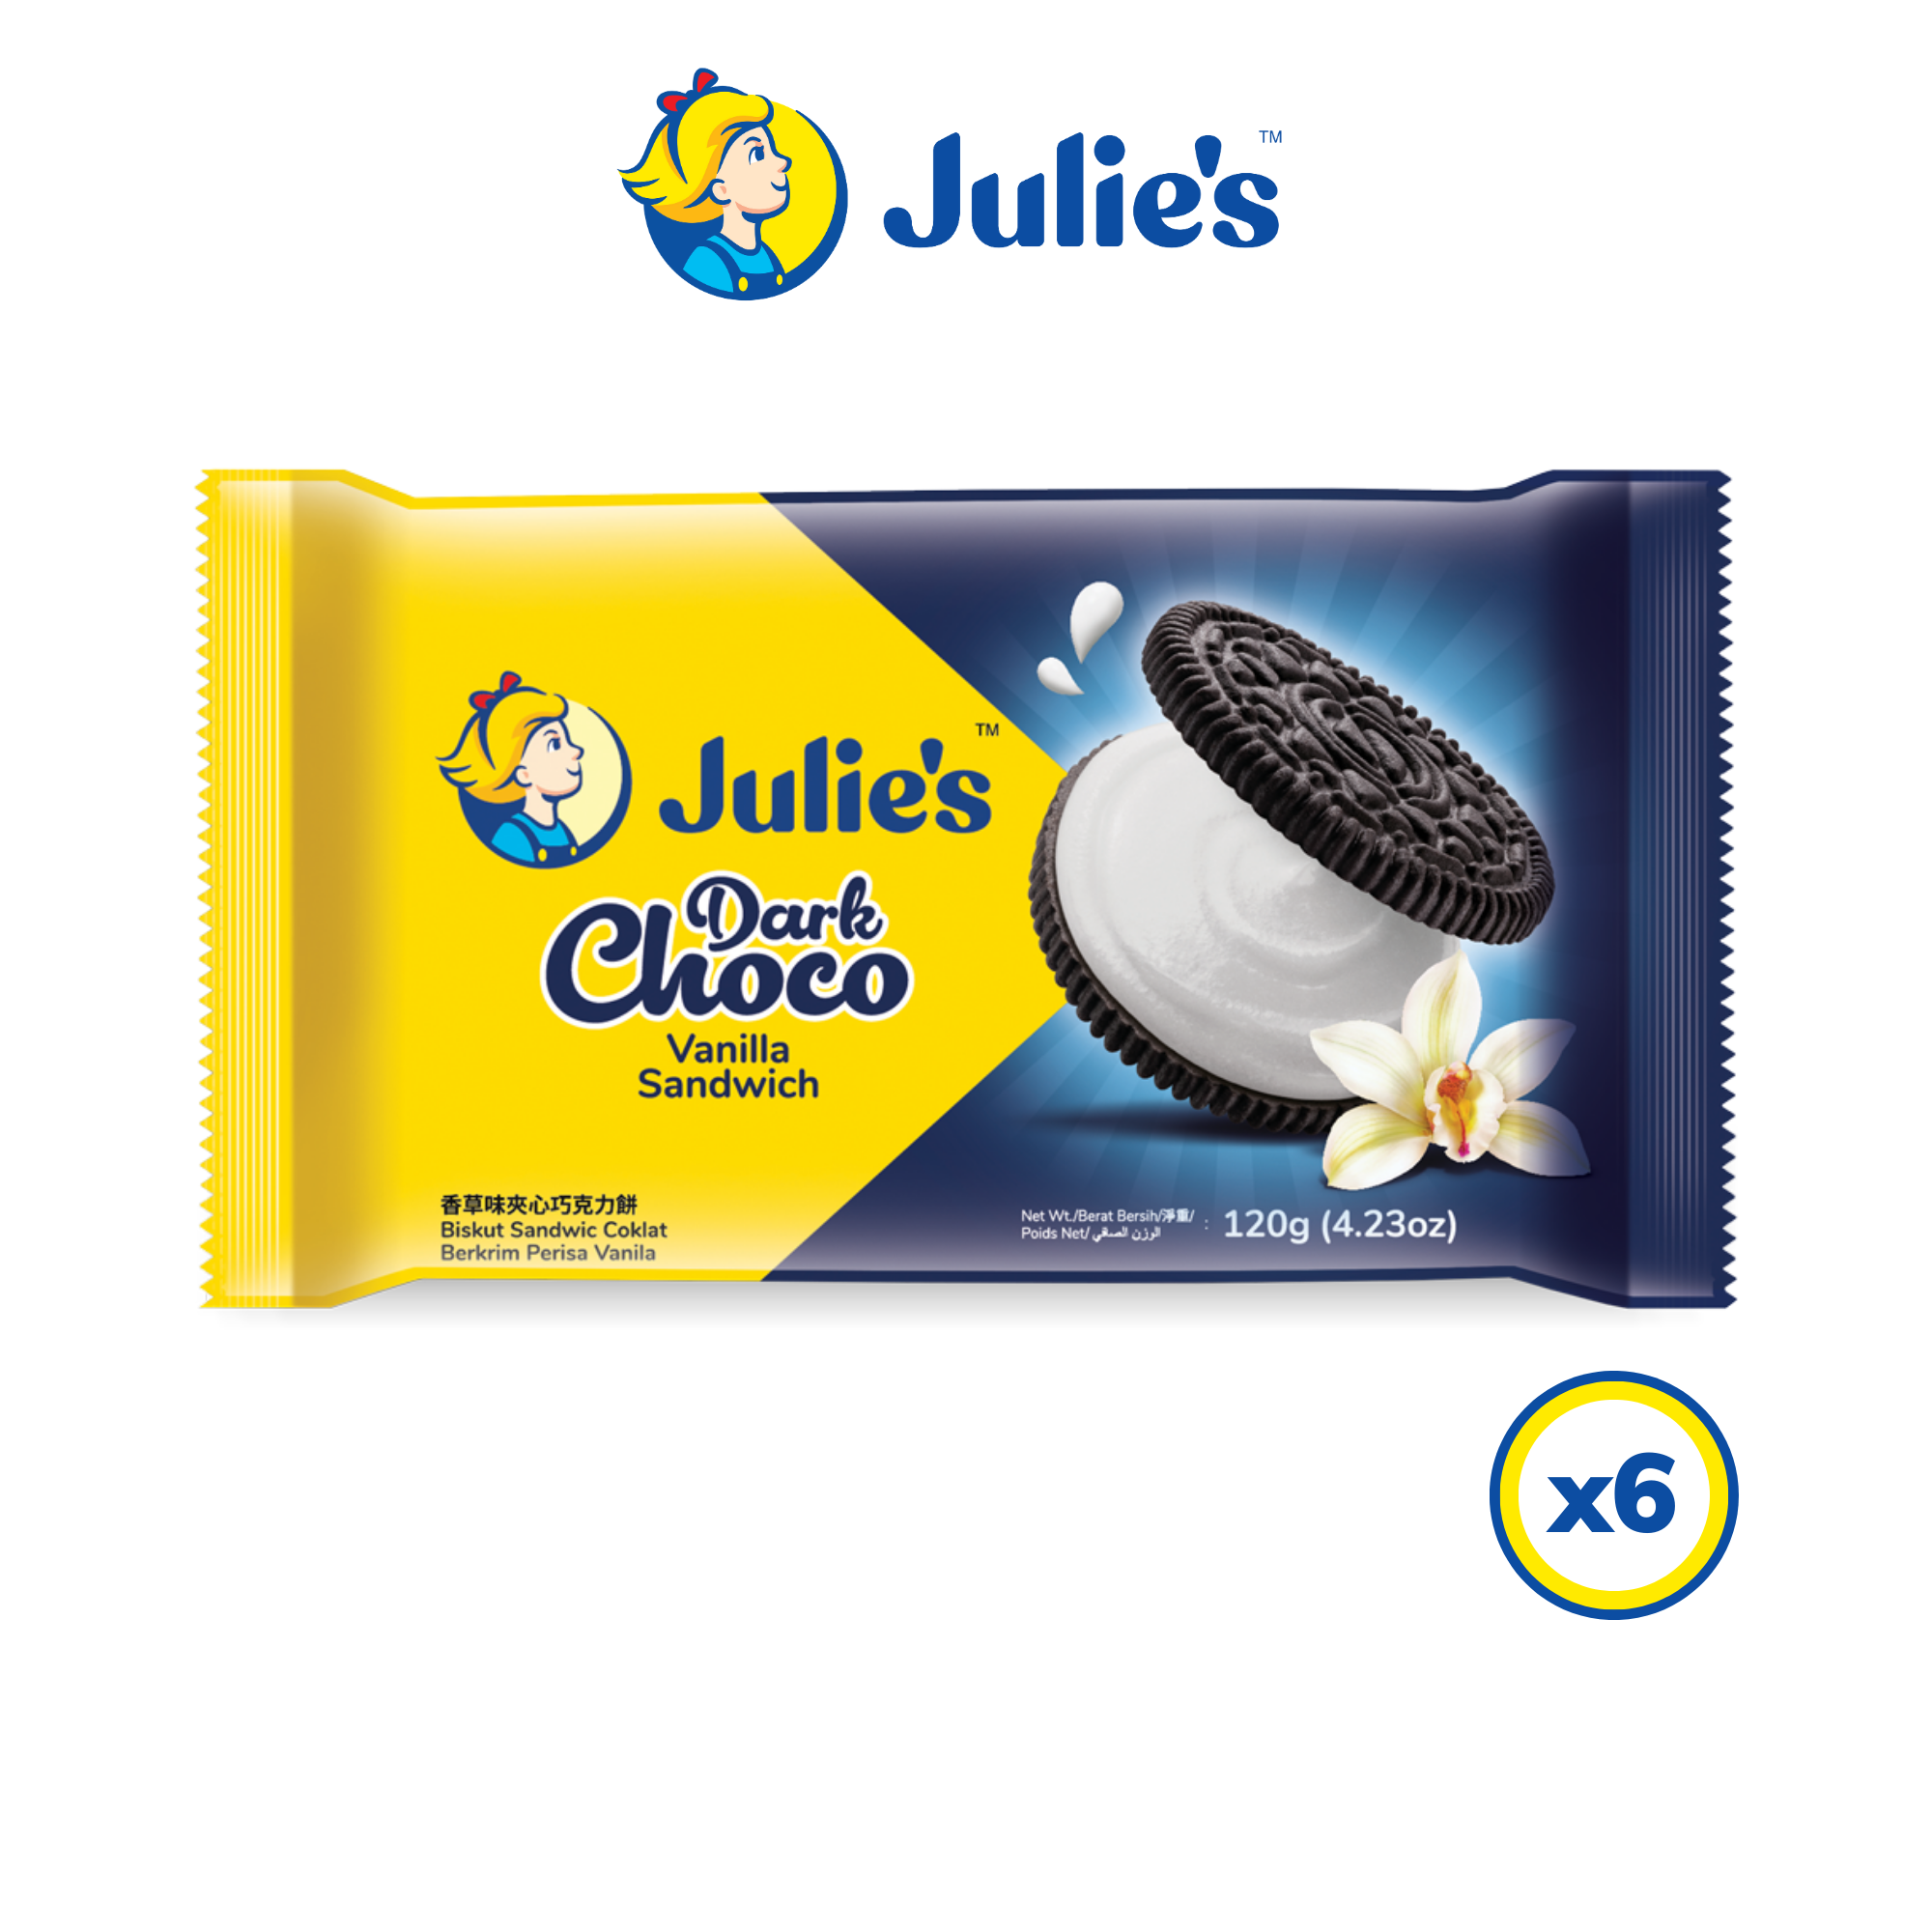 Julie\'s Dark Choco Vanilla Sandwich 120g x 6 packs